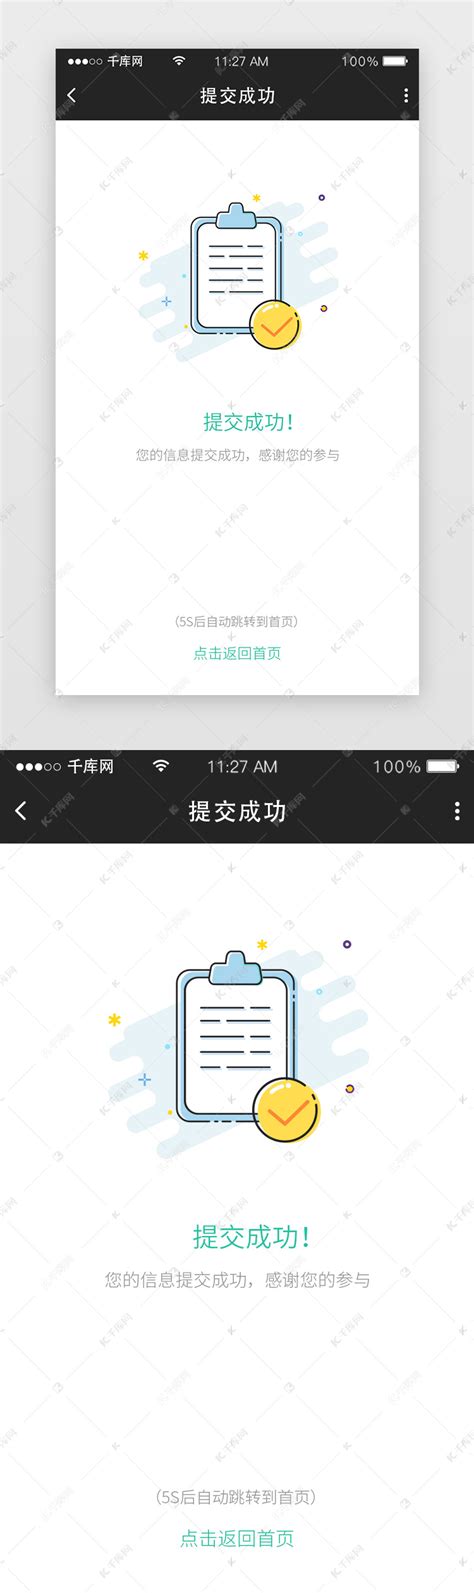 2.5D插画提交成功app提示页ui界面设计素材-千库网